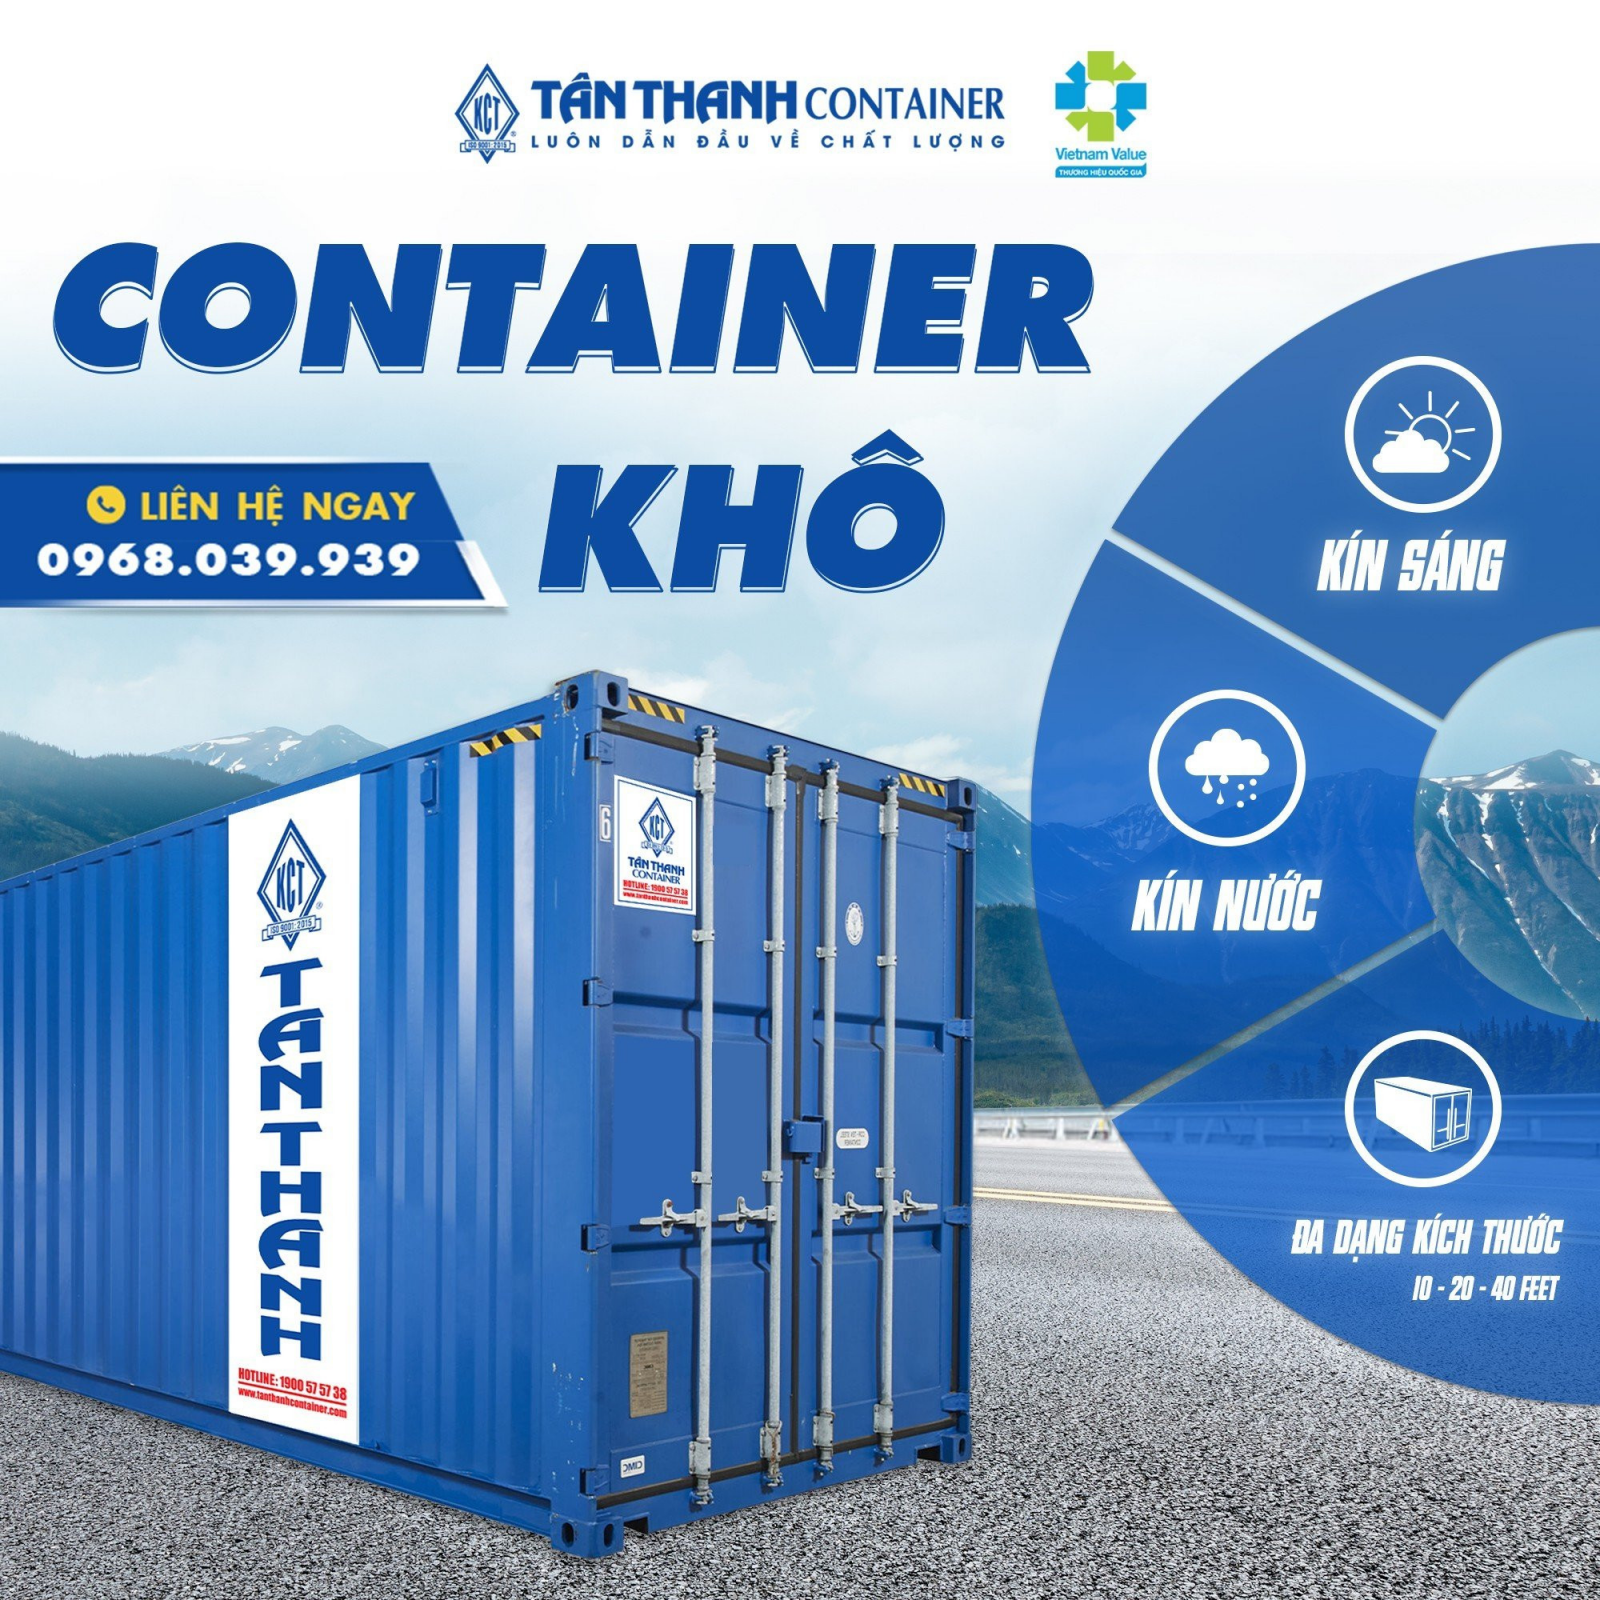 Giá thuê container chở hàng (2)